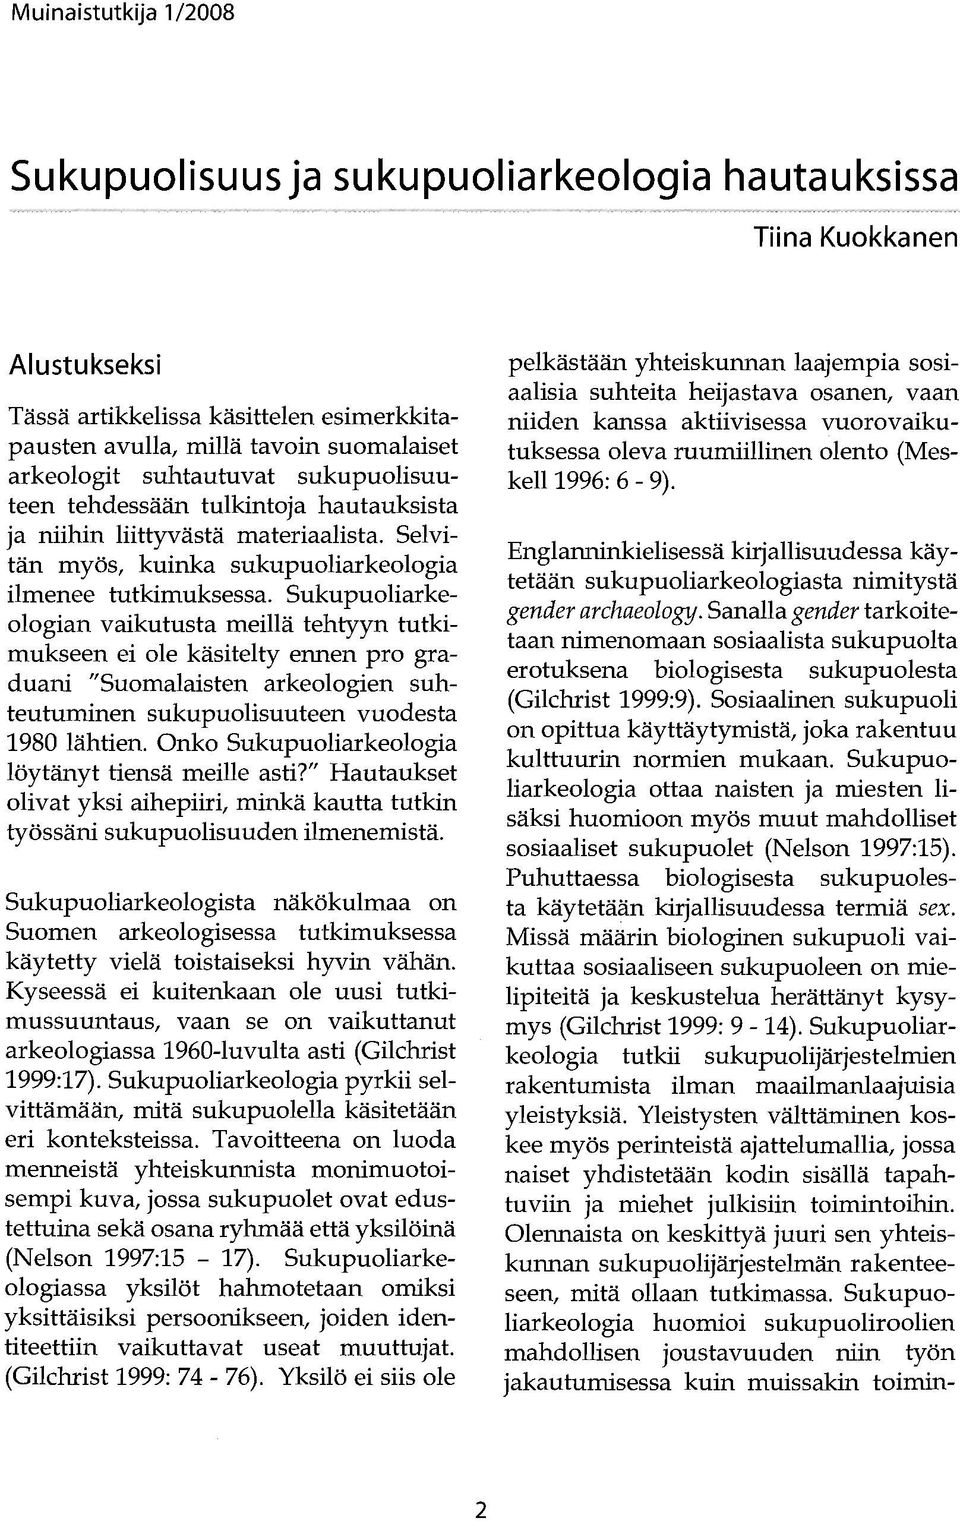 Sukupuoliarkeologian vaikutusta meillä tehtyyn tutkimukseen ei ole käsitelty ennen pro graduani "Suomalaisten arkeologien suhteutuminen sukupuolisuuteen vuodesta 1980 lähtien.